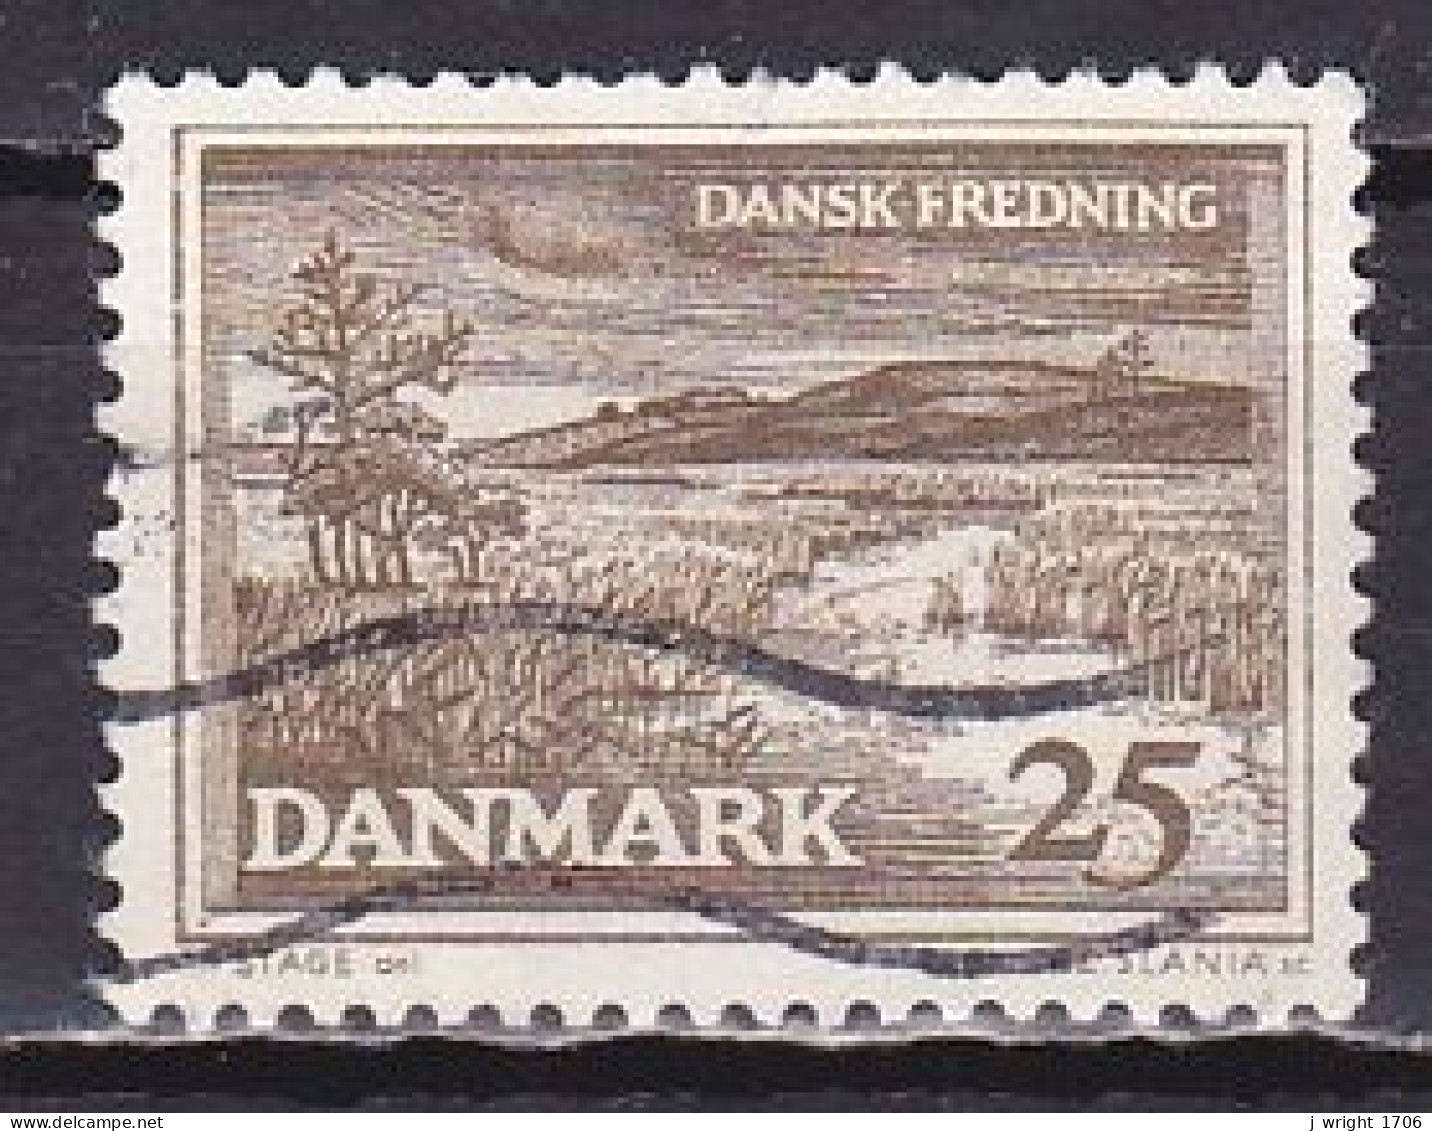 Denmark, 1964, Natural Preservation/R. Karup Landscape, 25ø, USED - Gebruikt